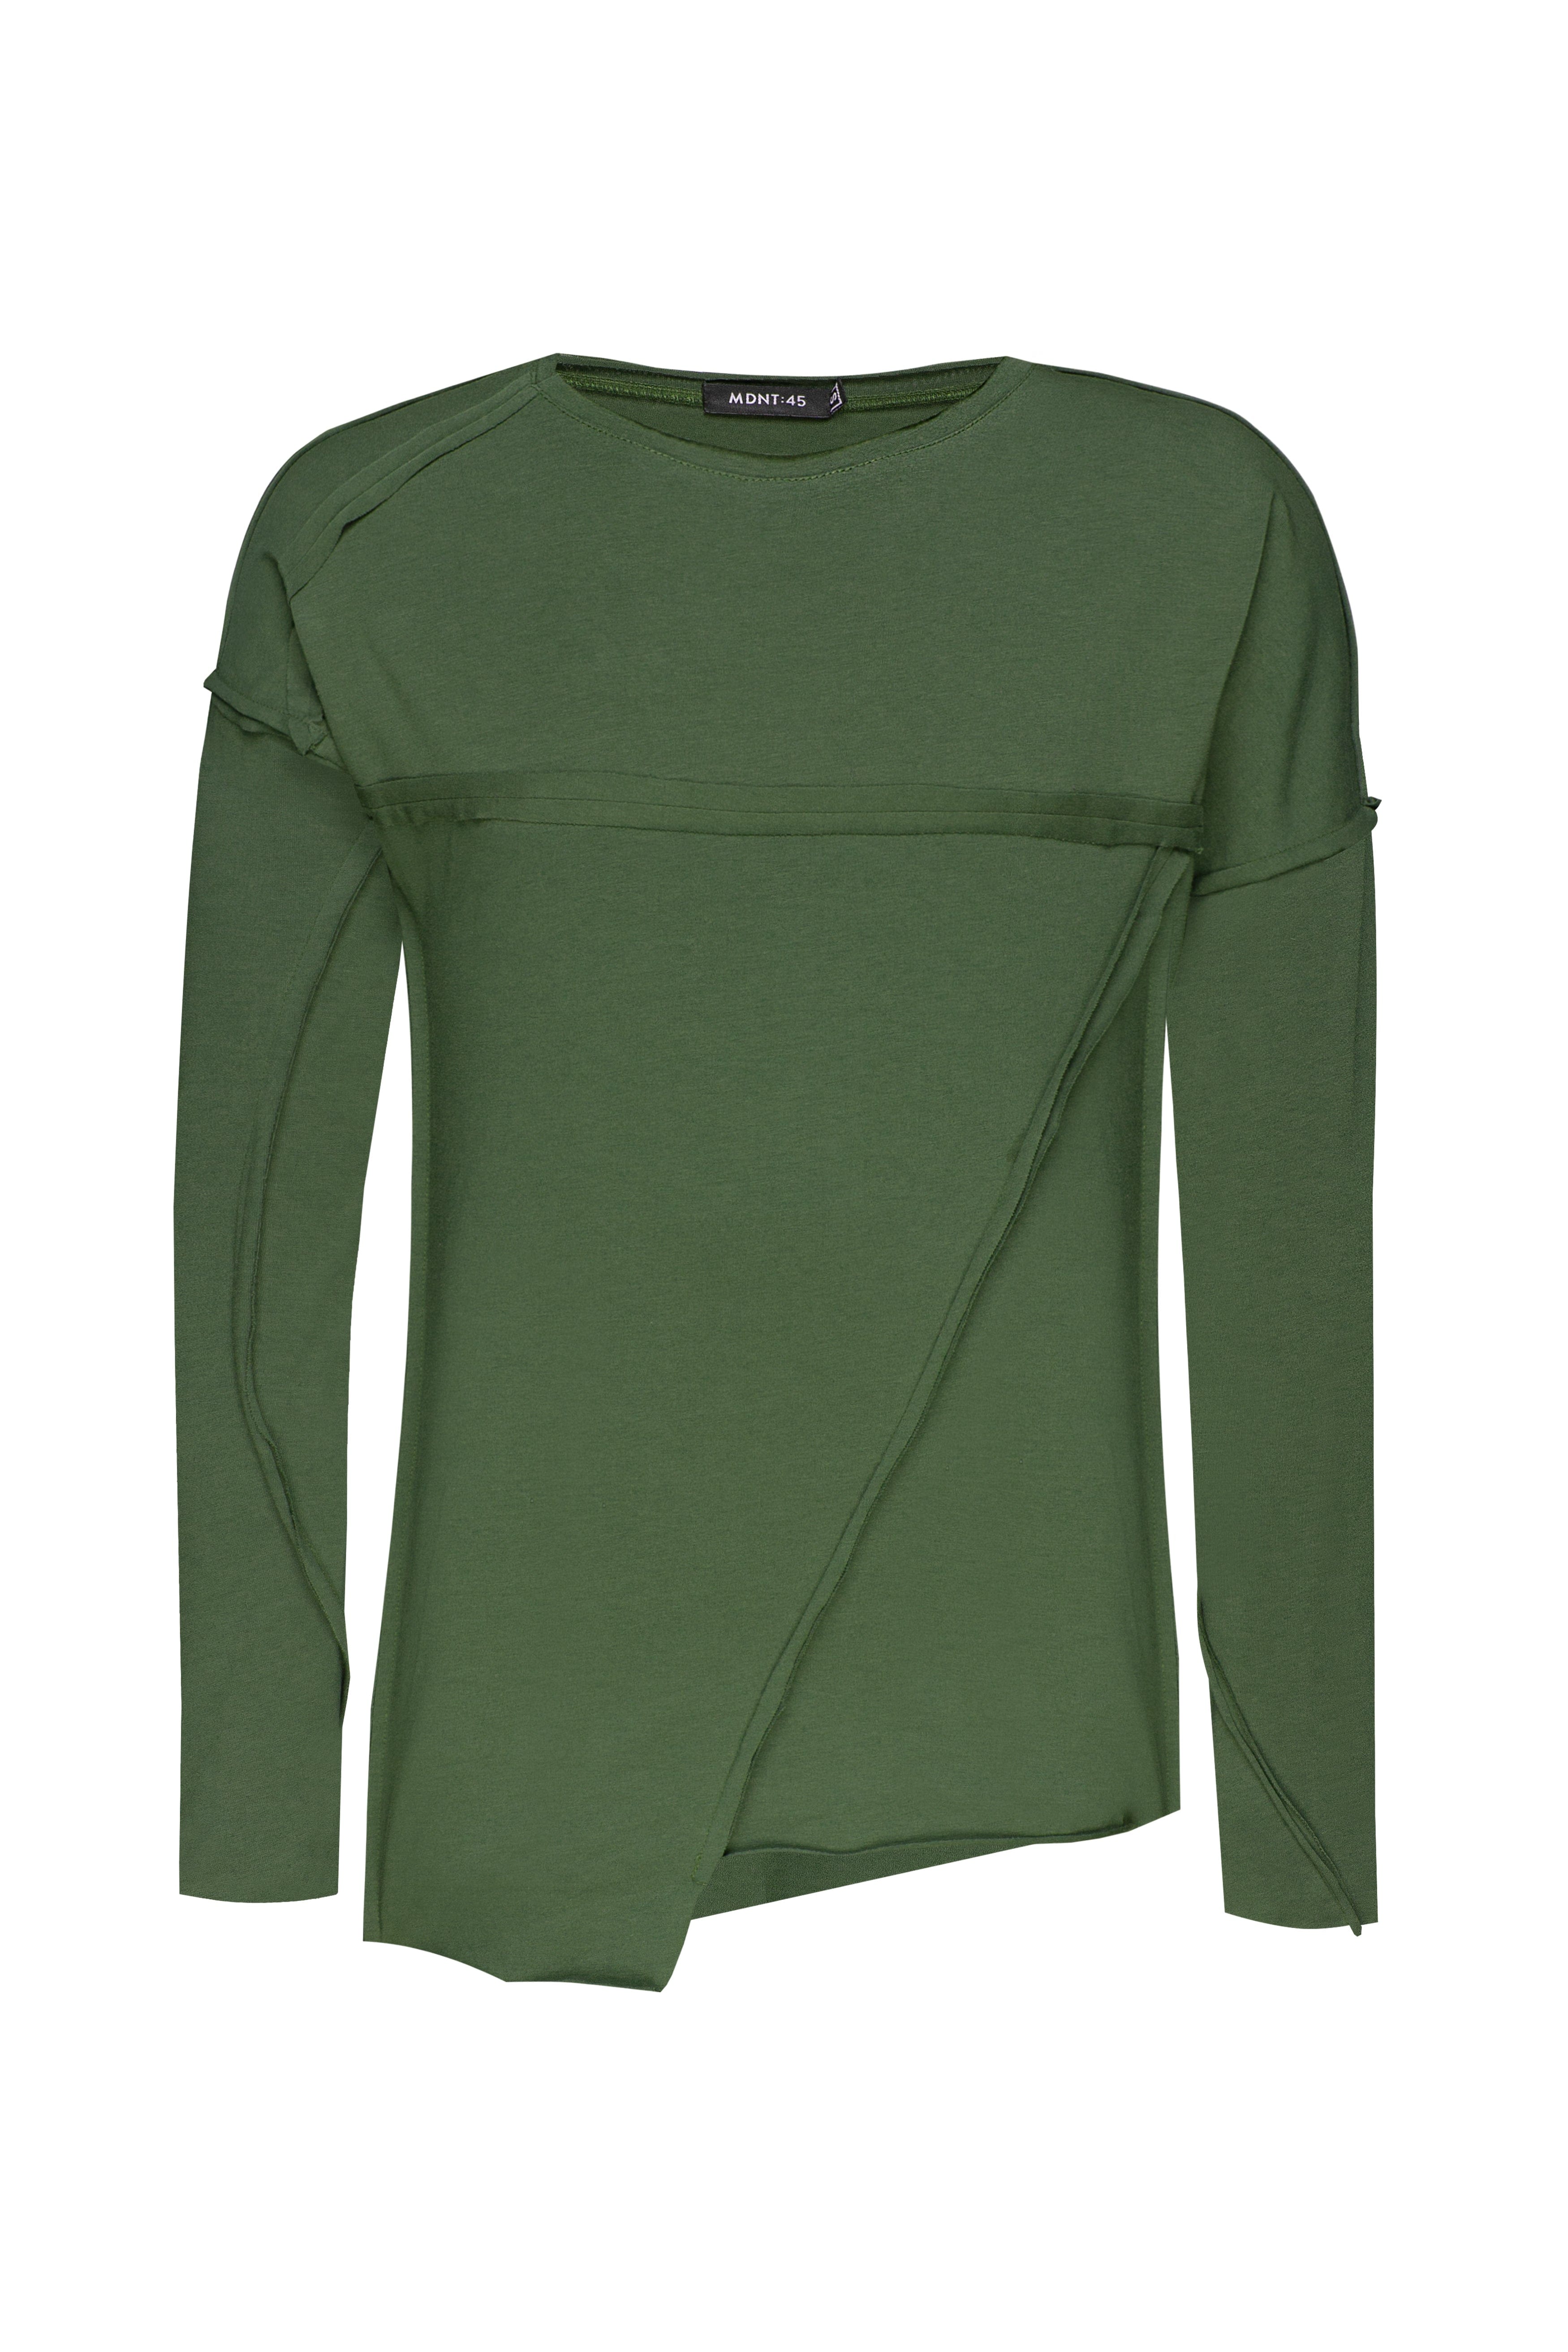 MDNT45 Tops & T-shirts Green geometric sweatshirt